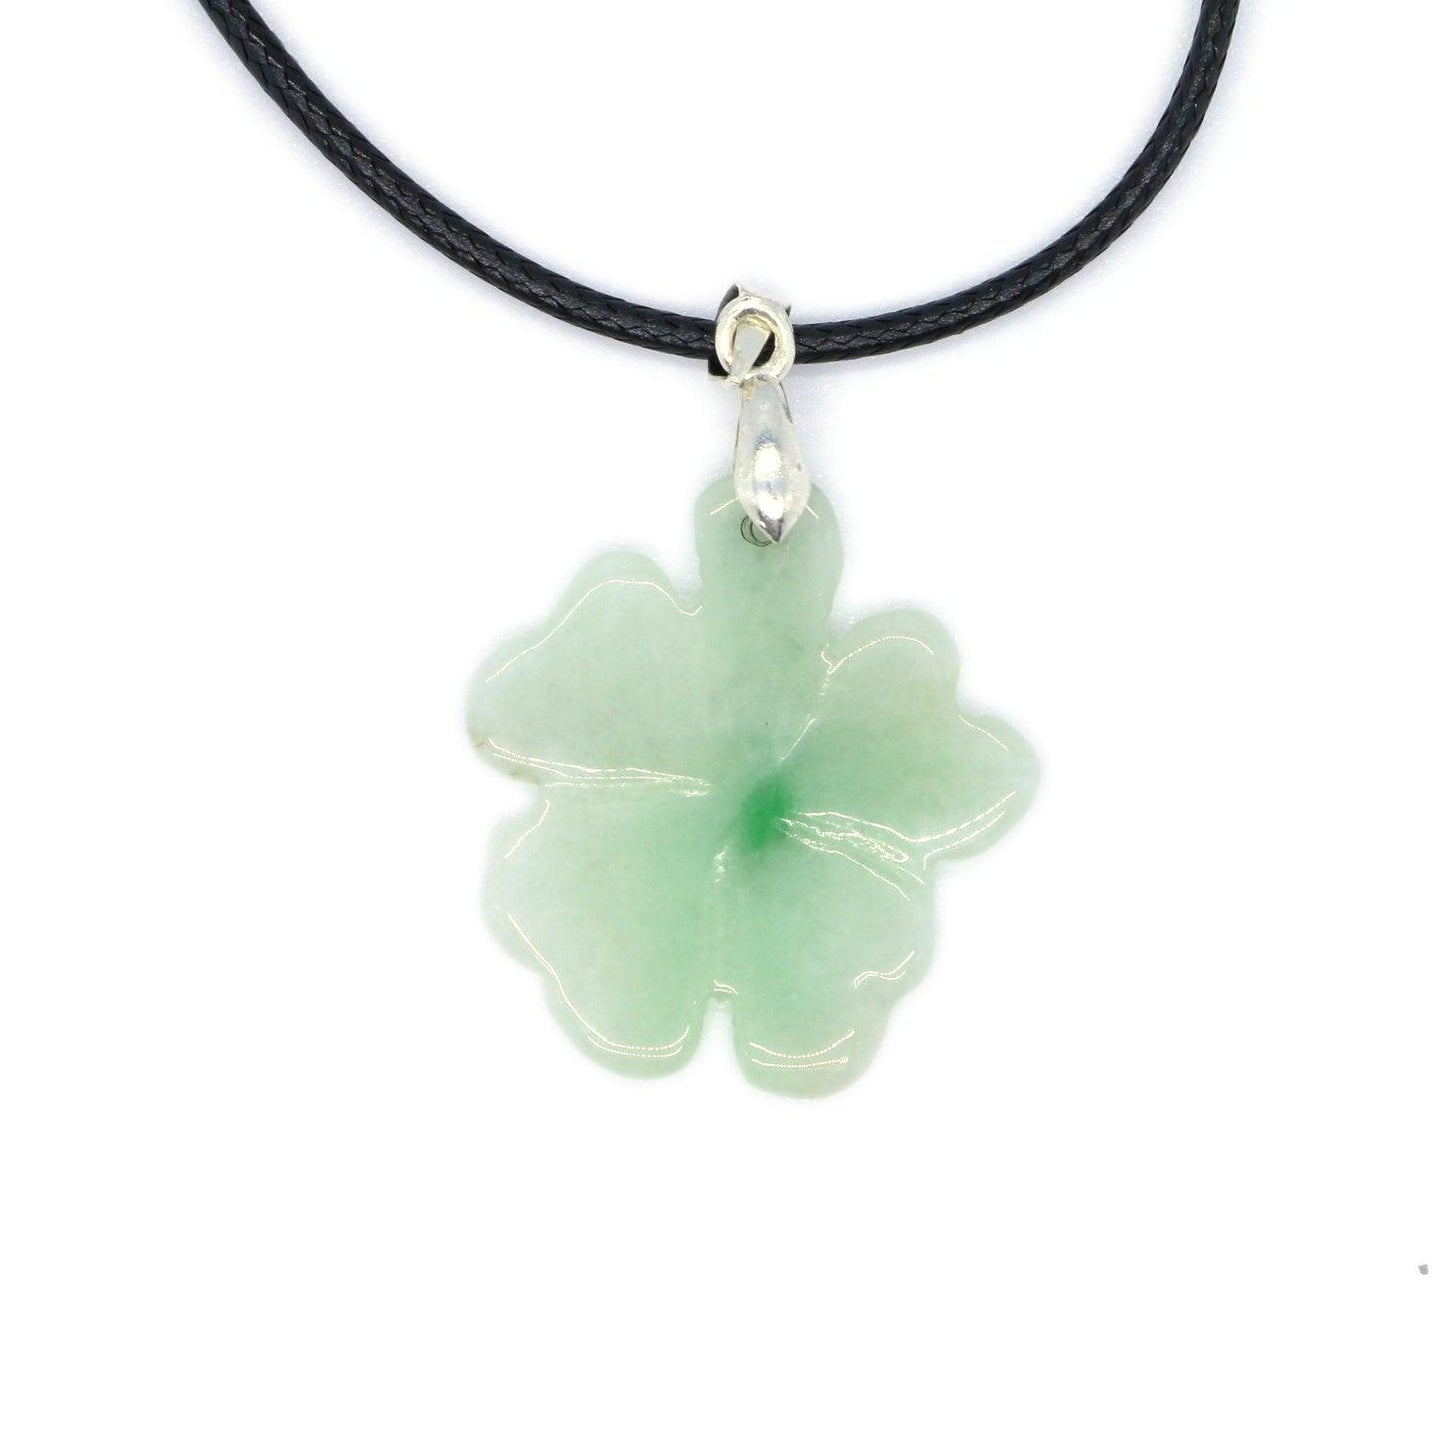 Type A Jadeite Jade Pendants Four-leaf clover Series pe10064 - Jade-collector.com